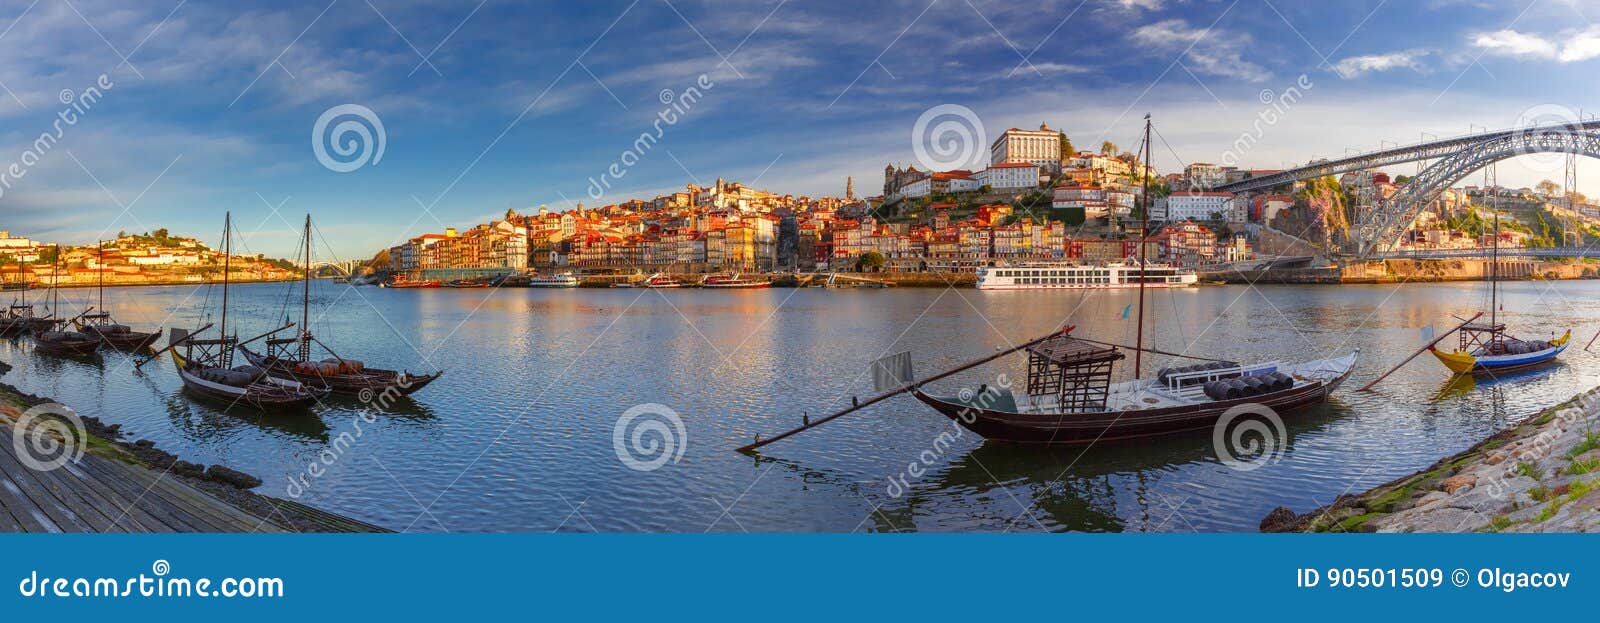 rabelo boats on the douro river, porto, portugal.